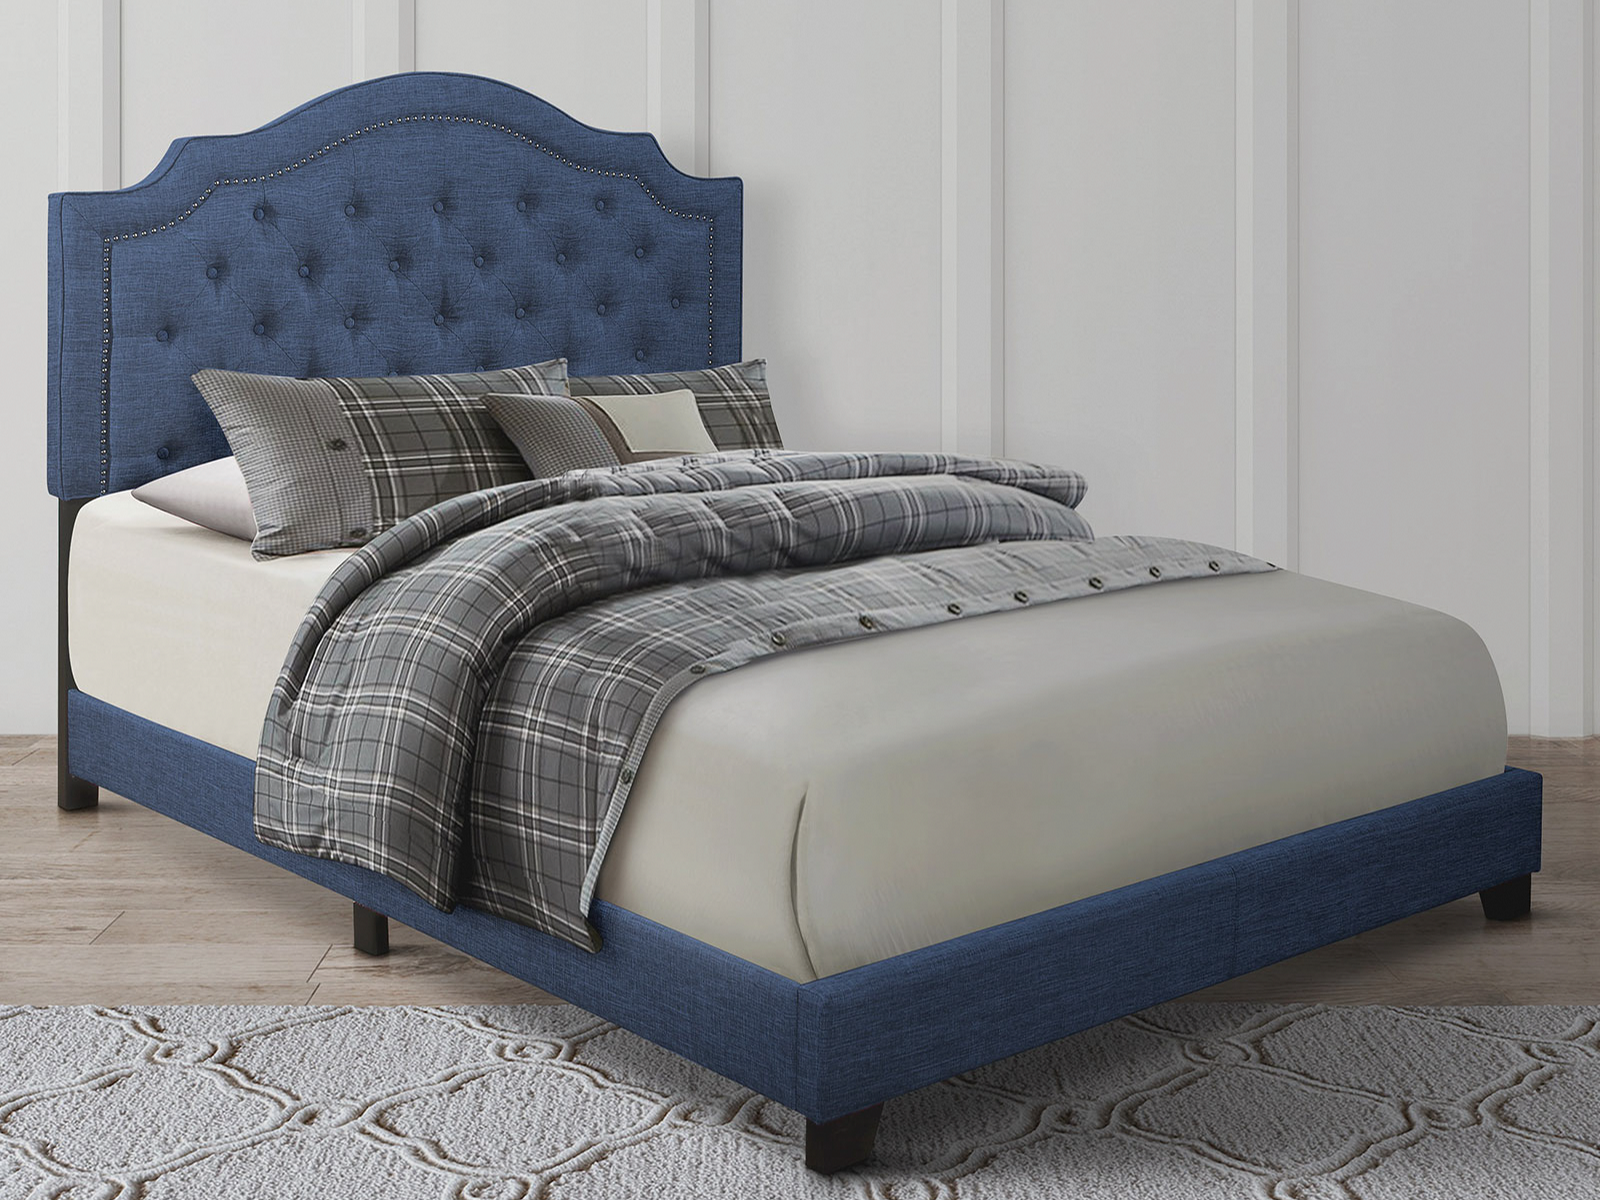 Homelegance Upholstered Bed Set | King | Harley Bed Frame & Headboard | Blue